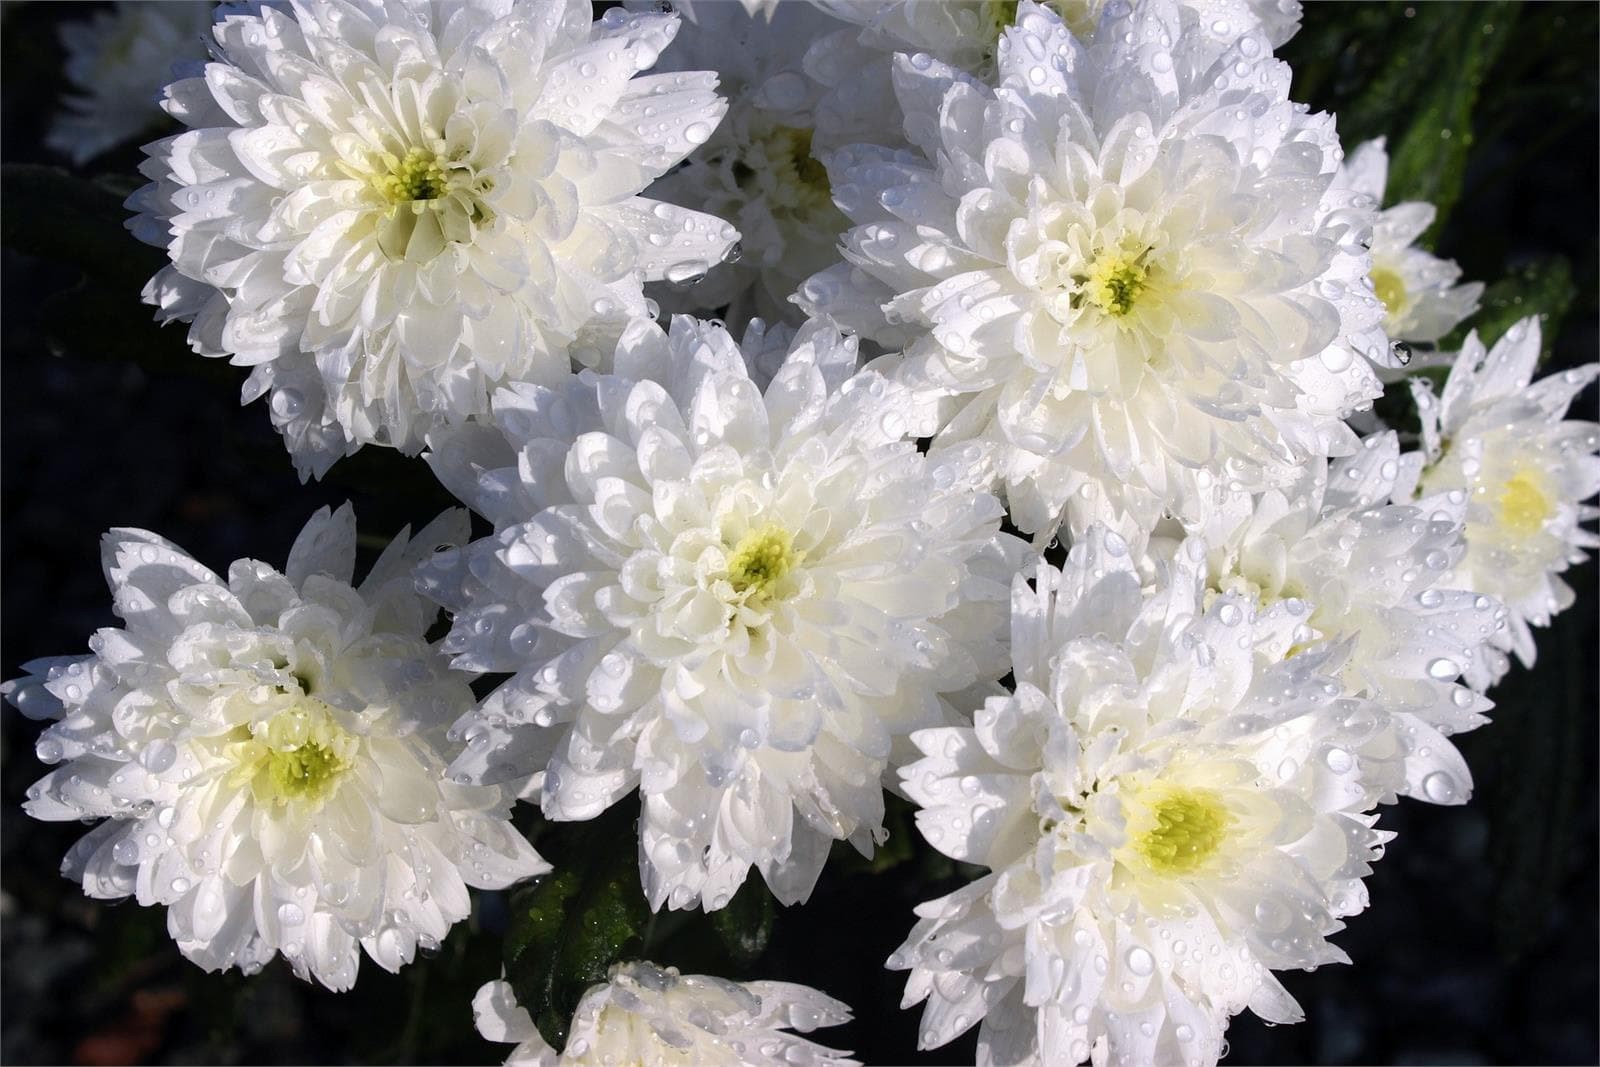 Conozca las flores más utilizadas en los centros para el Día de Difuntos - Imagen 1